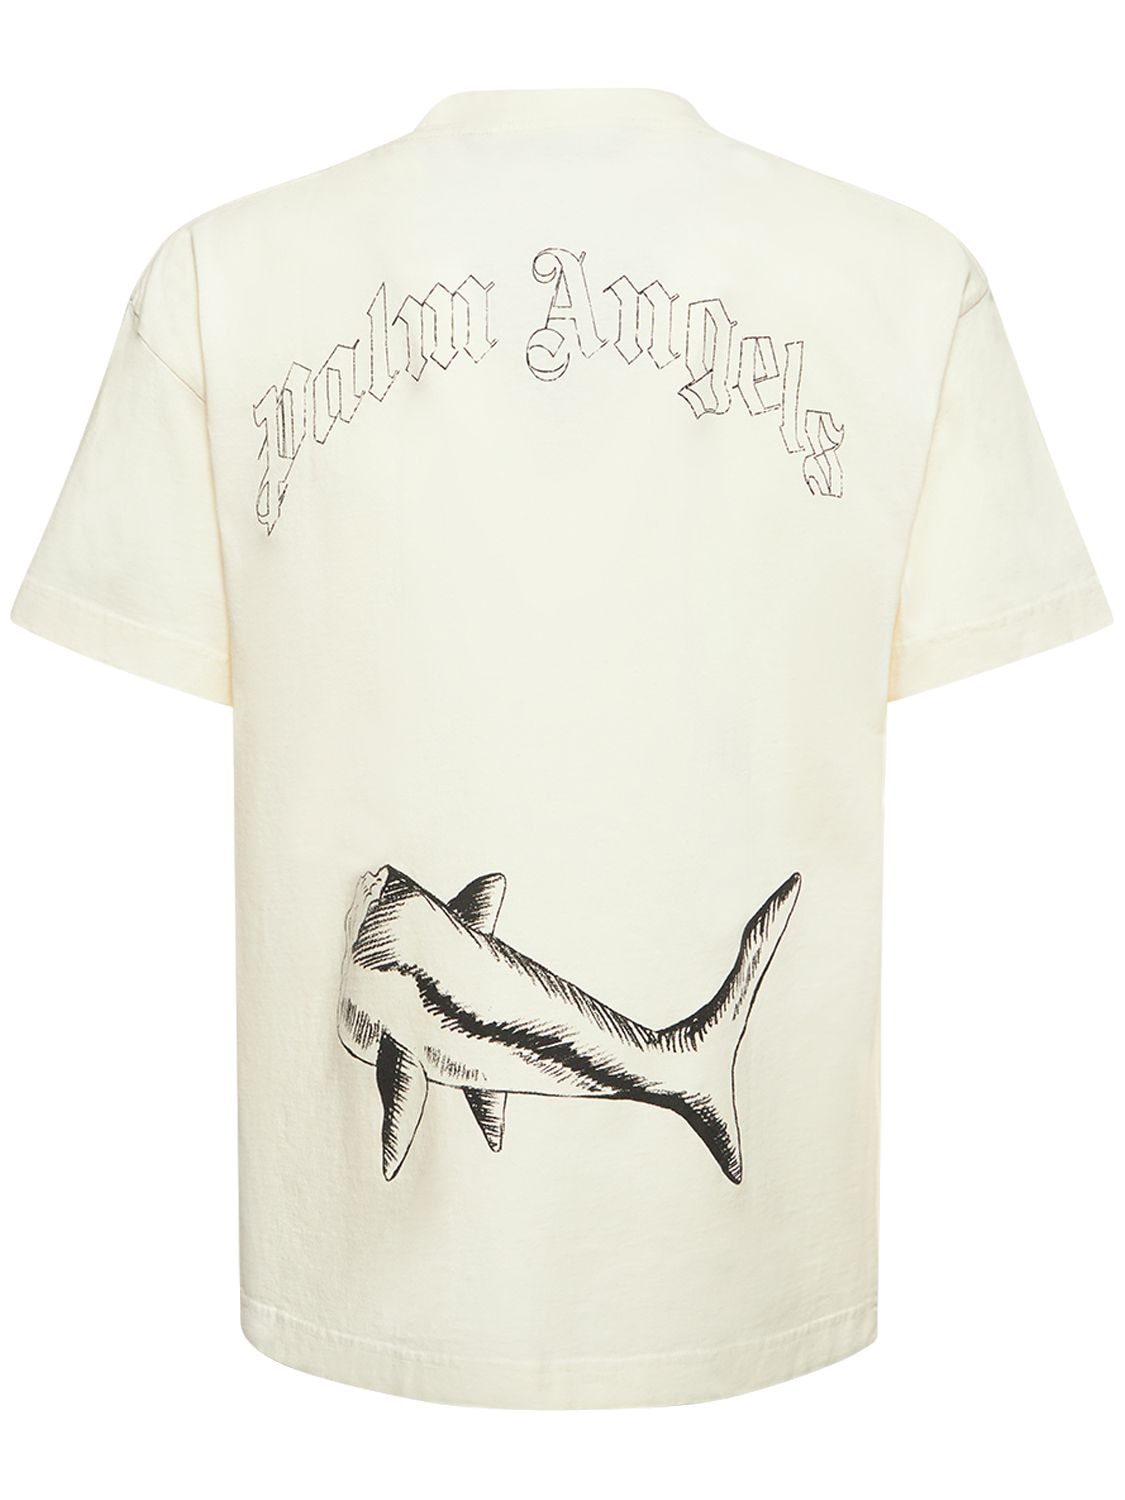 PALM ANGELS Broken Shark Cotton Jersey T-shirt